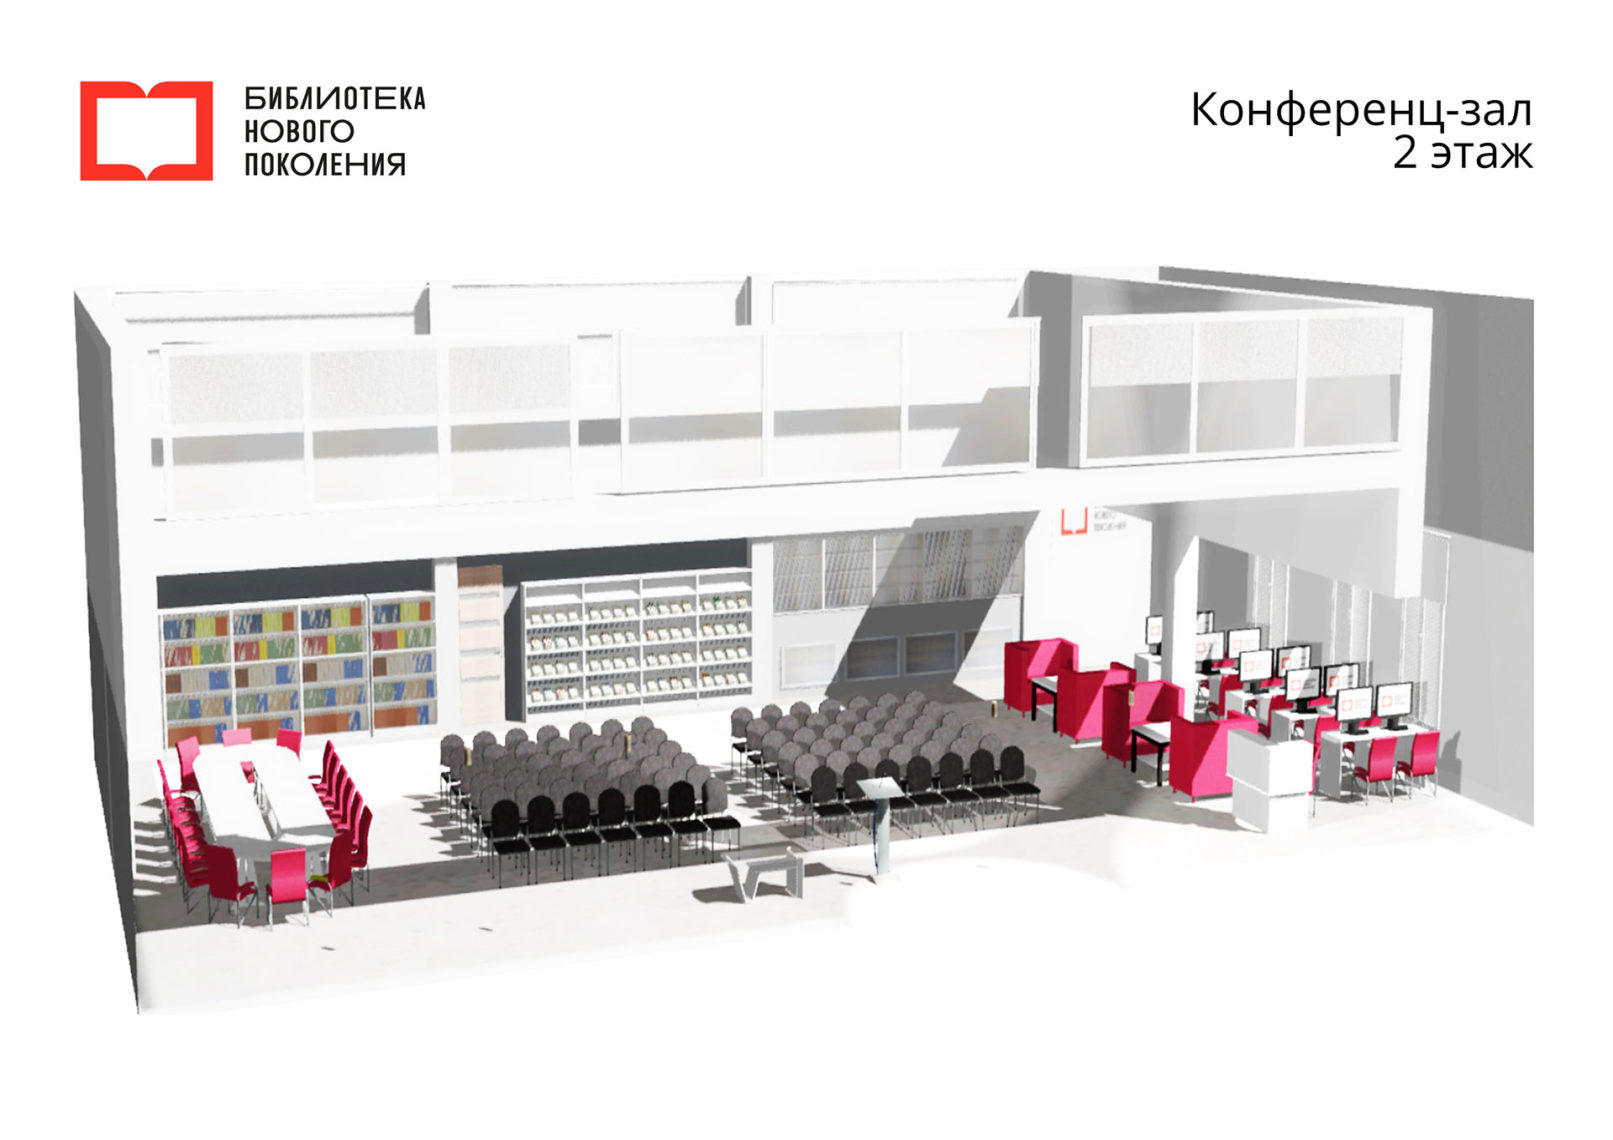 Вместо читателя – пользователь. В Магнитогорске появится вторая Библиотека нового поколения